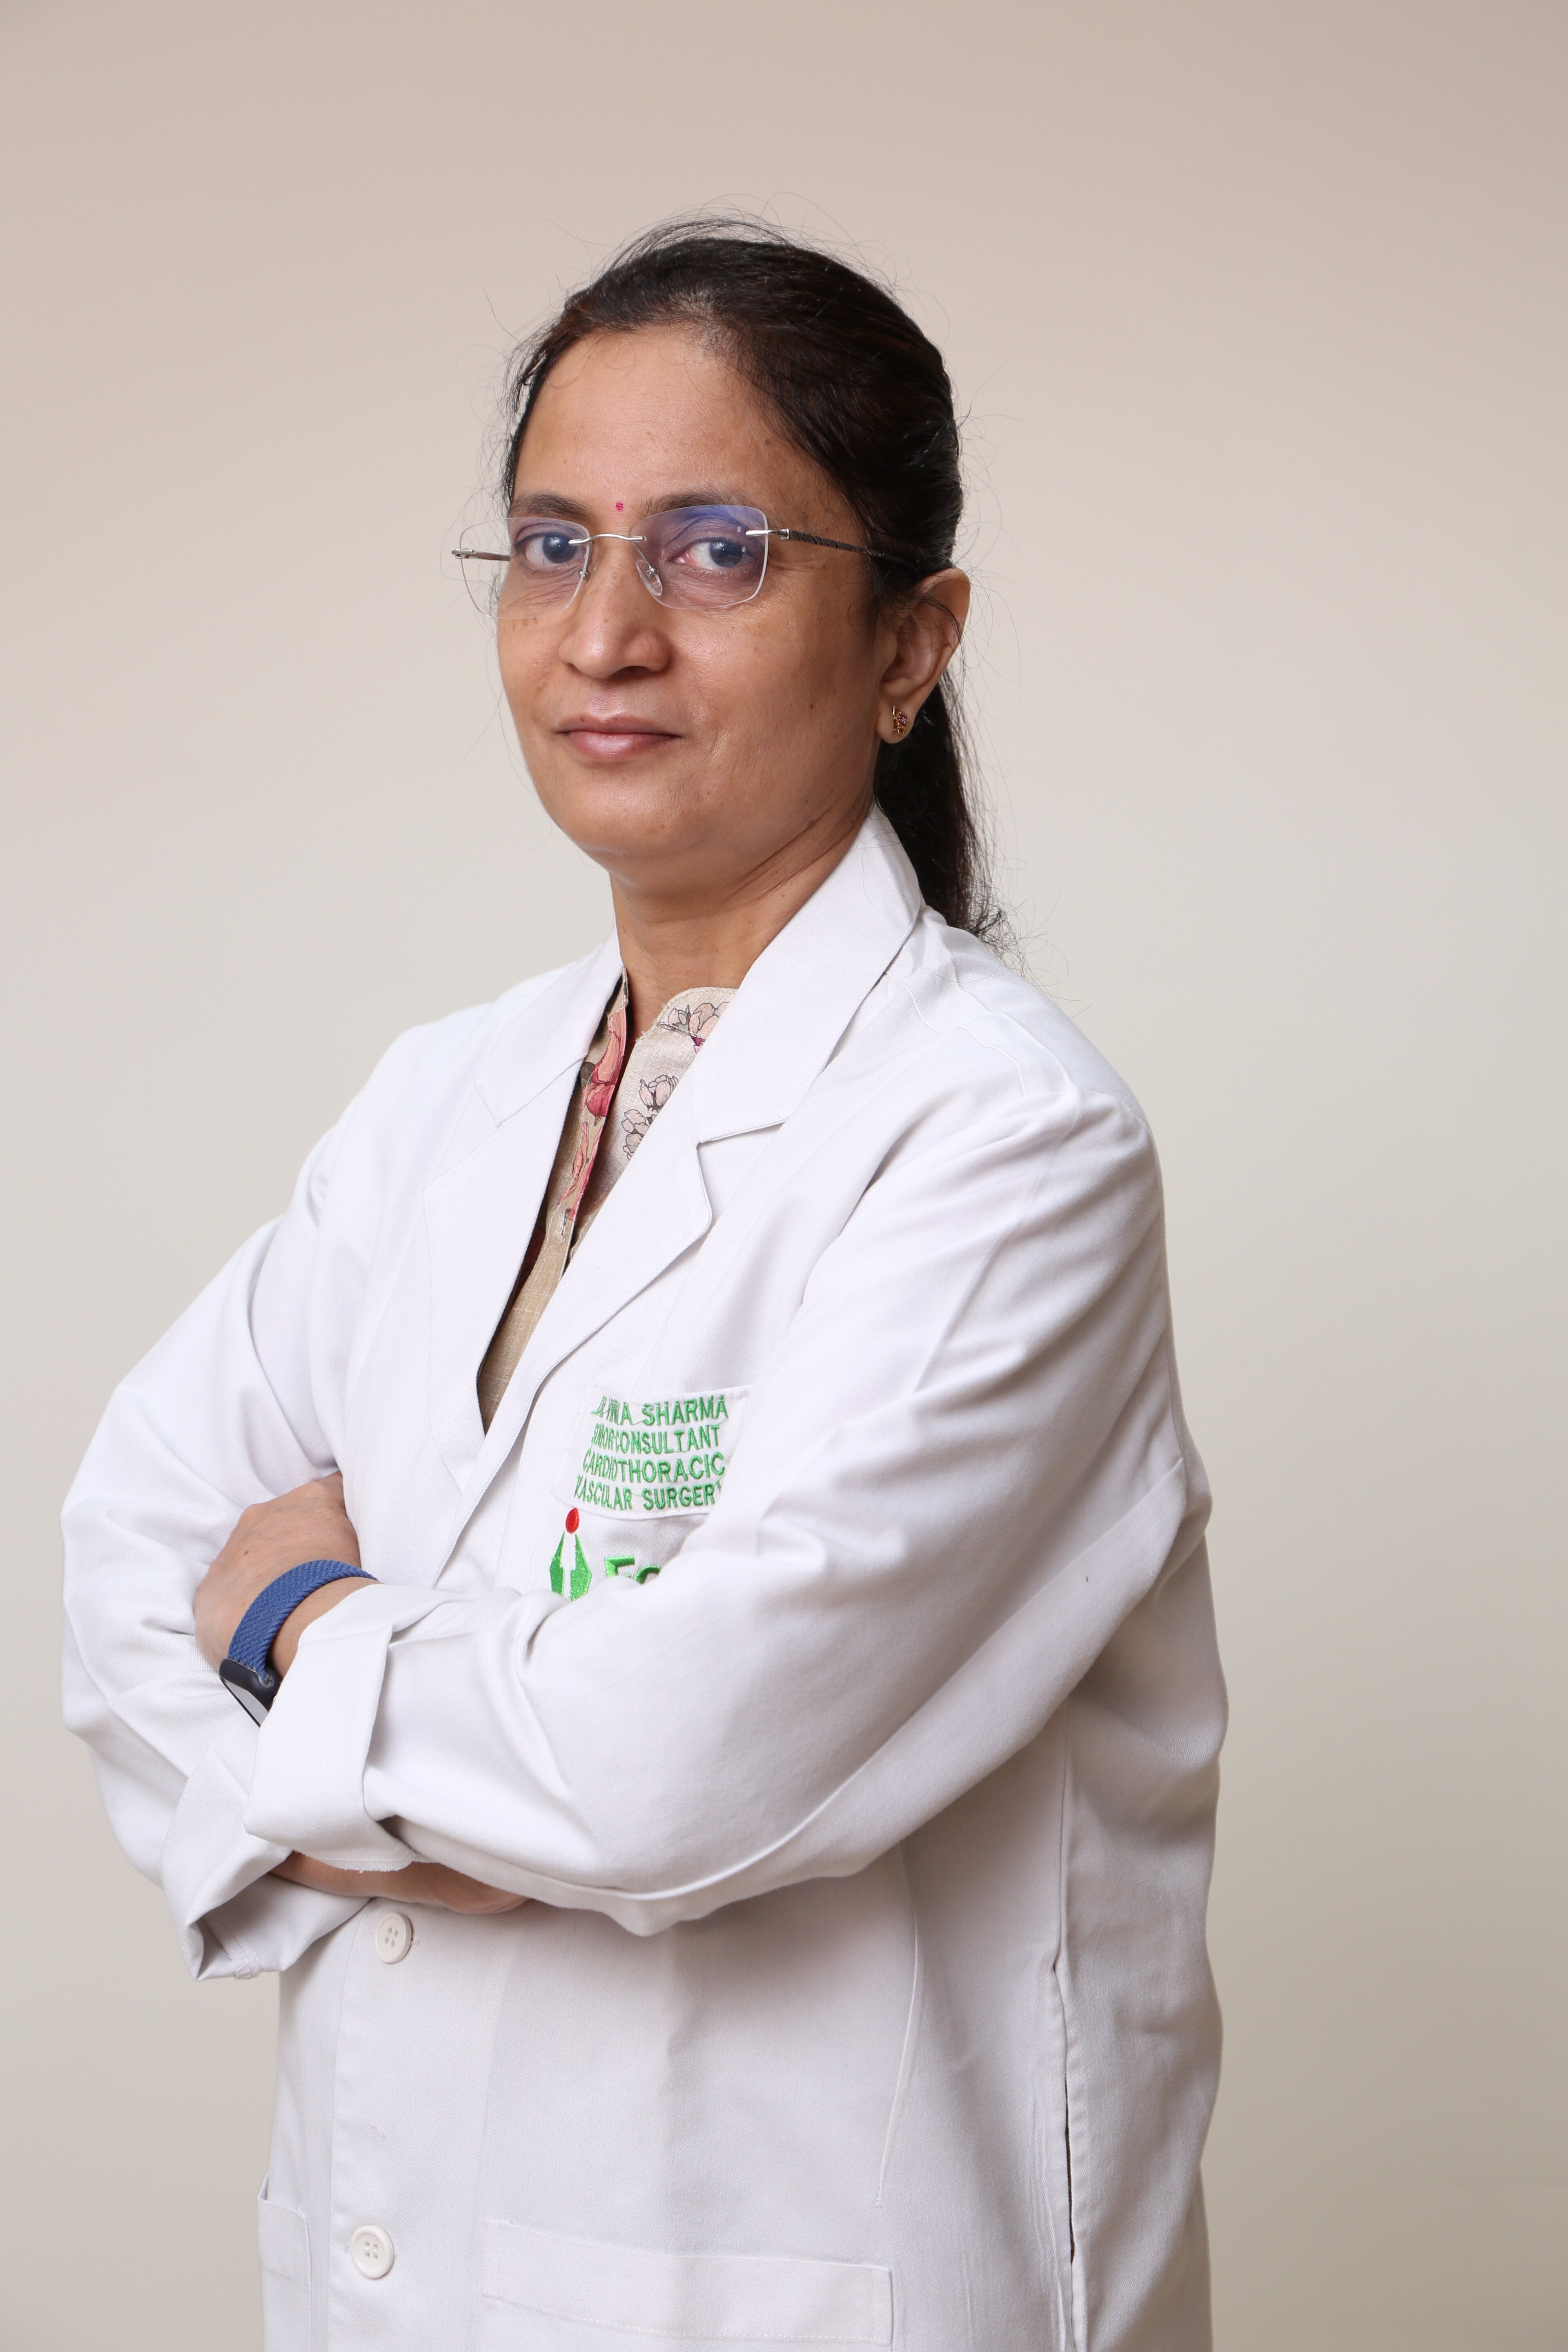 Vinita Sharma博士